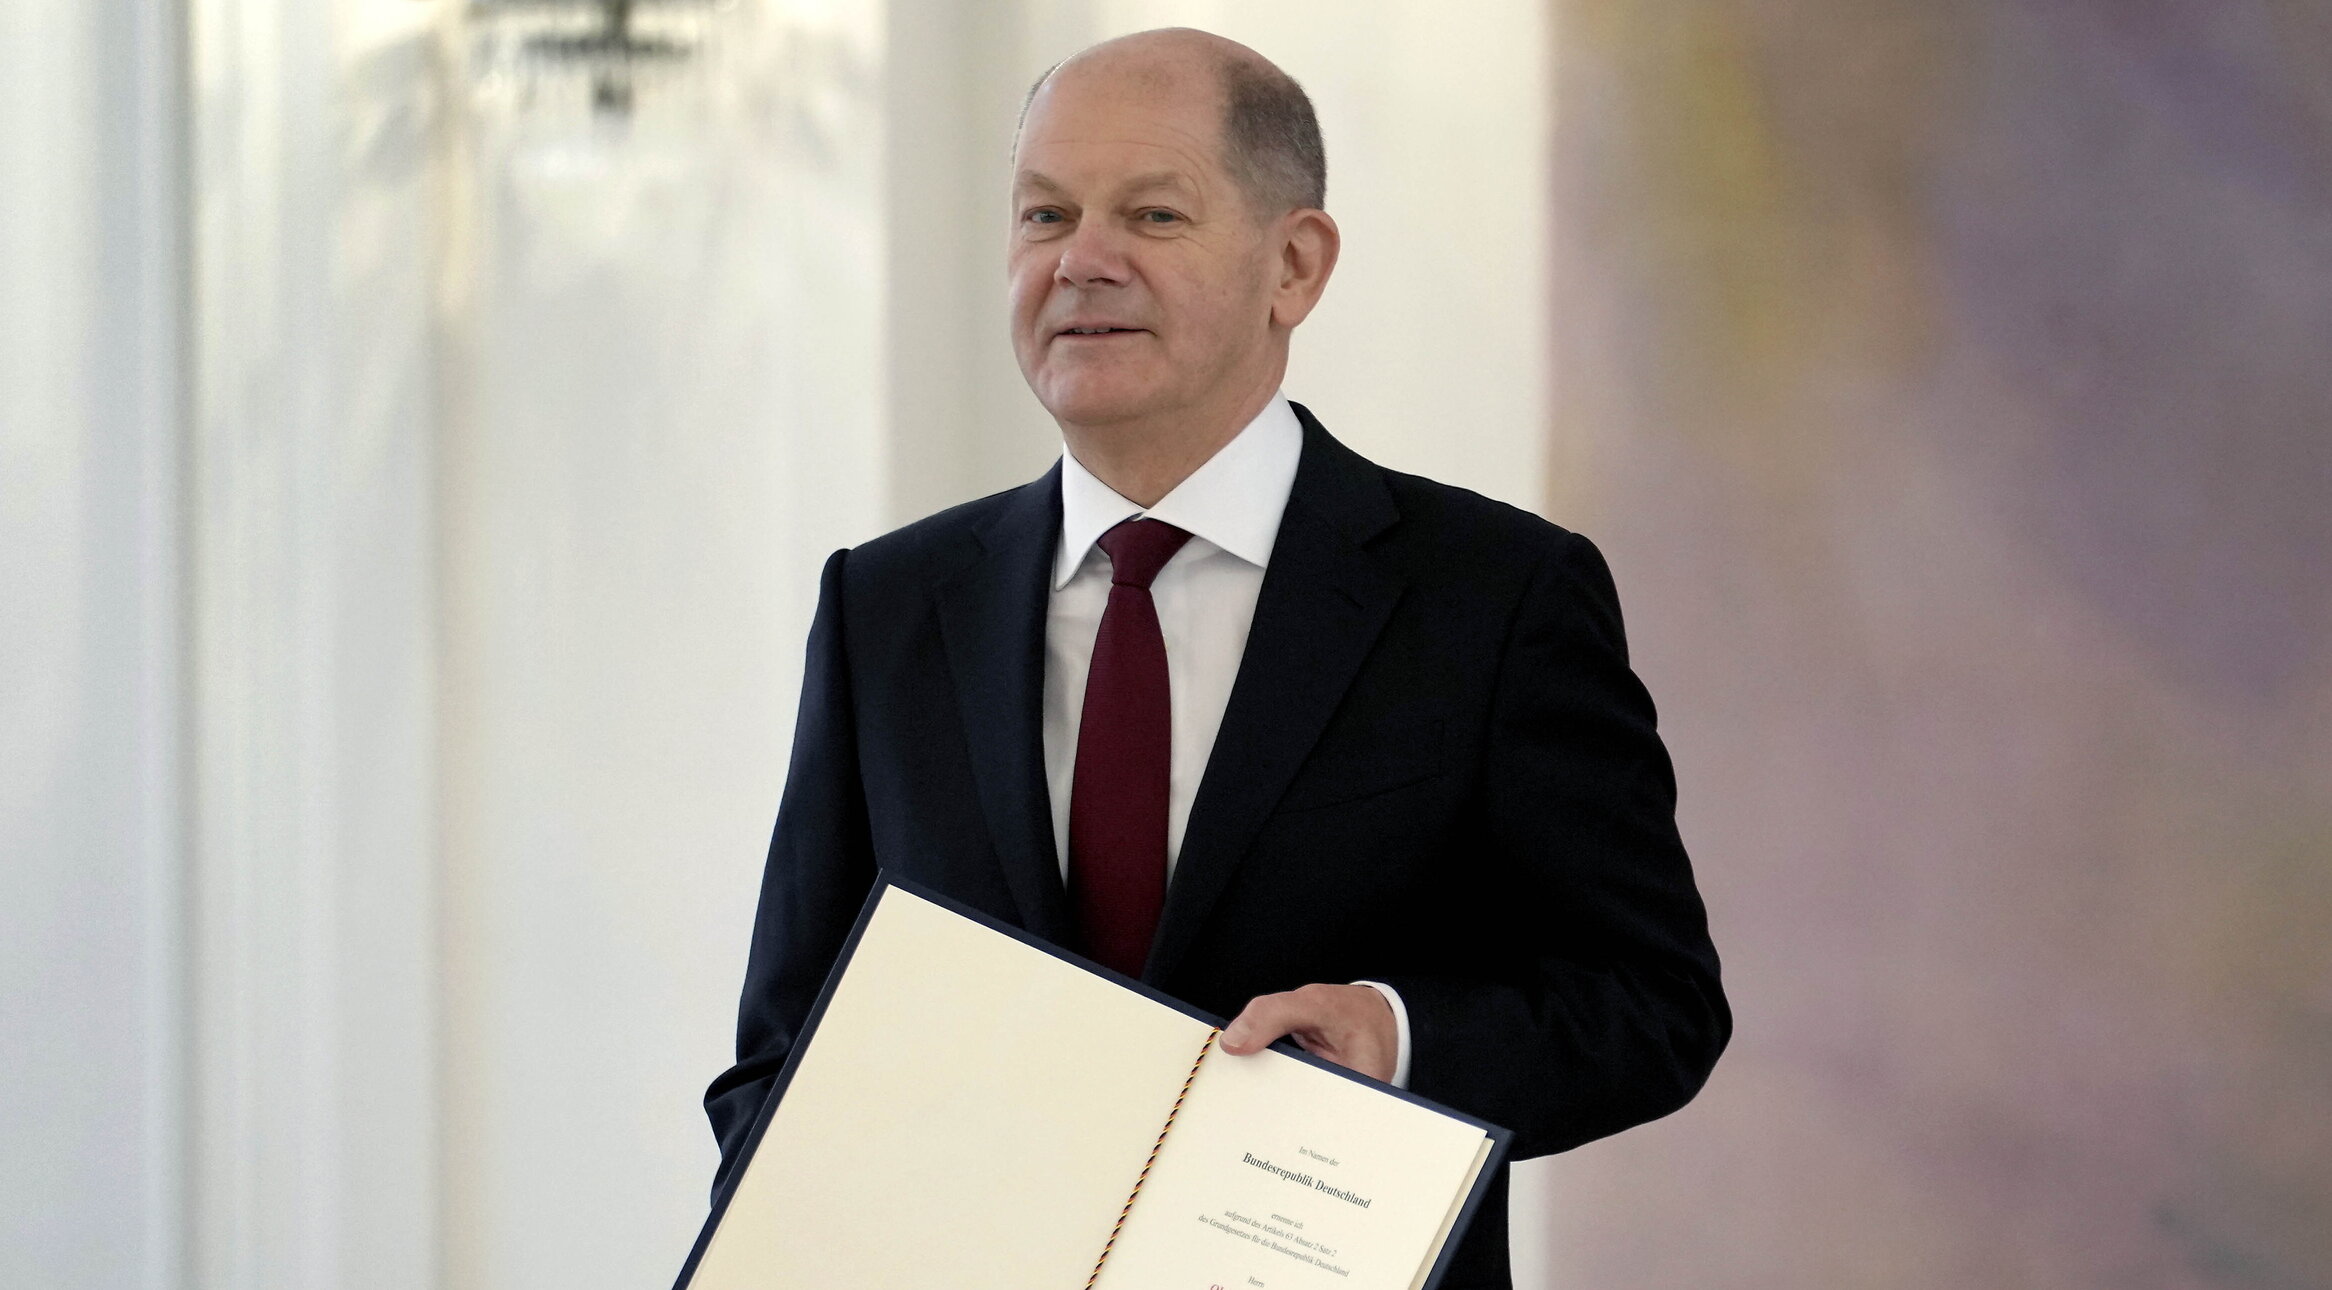 Olaf Scholz devine noul cancelar al Germaniei și pune capăt erei Merkel